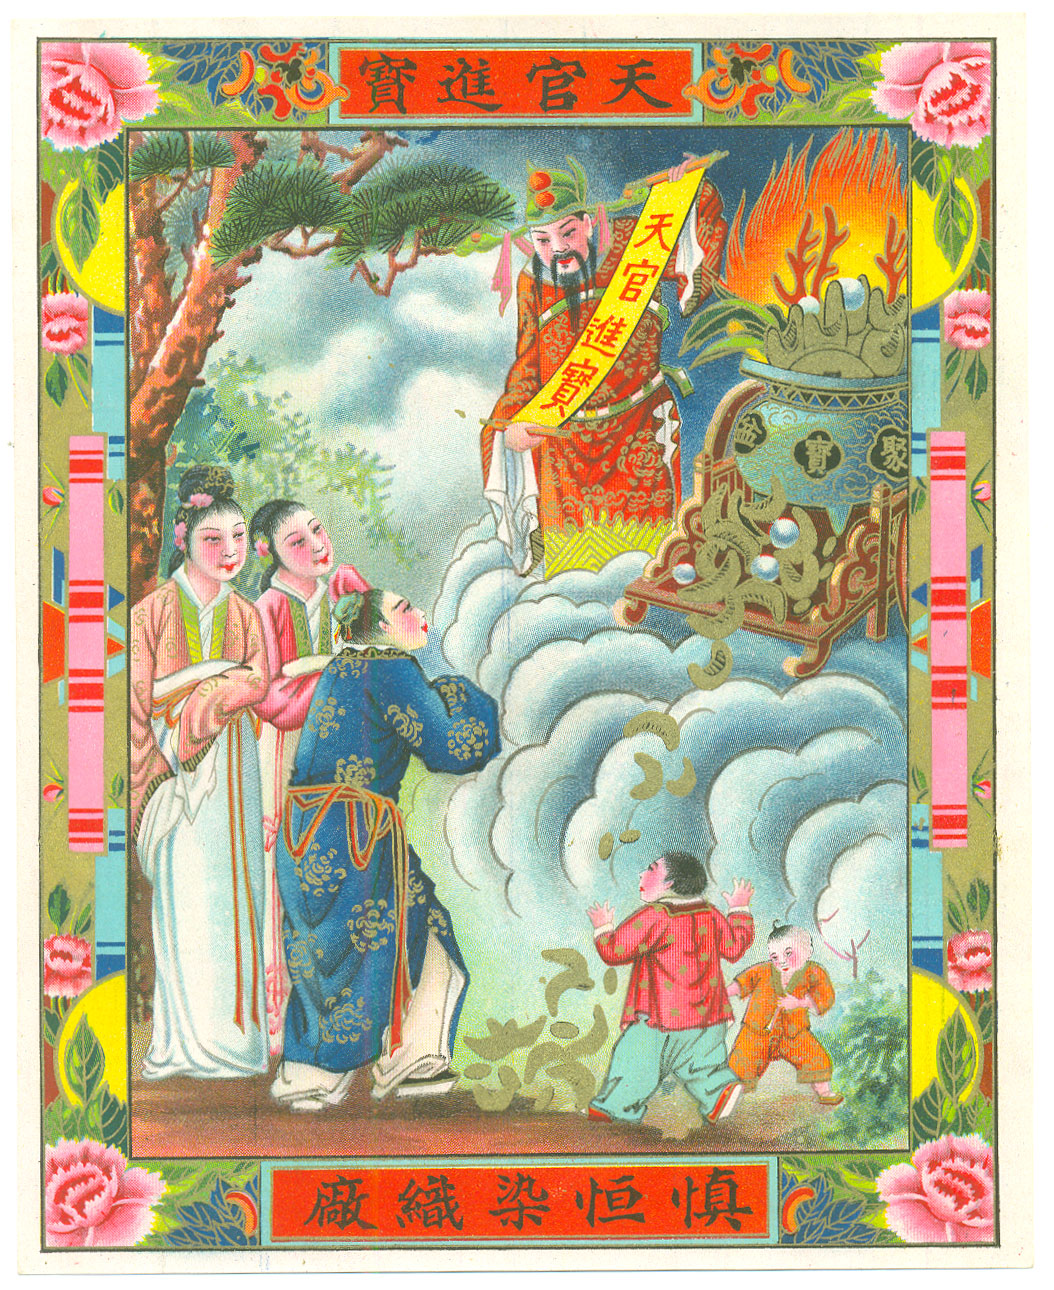 607 复古民国时期老上海老广告画JPG参考素材